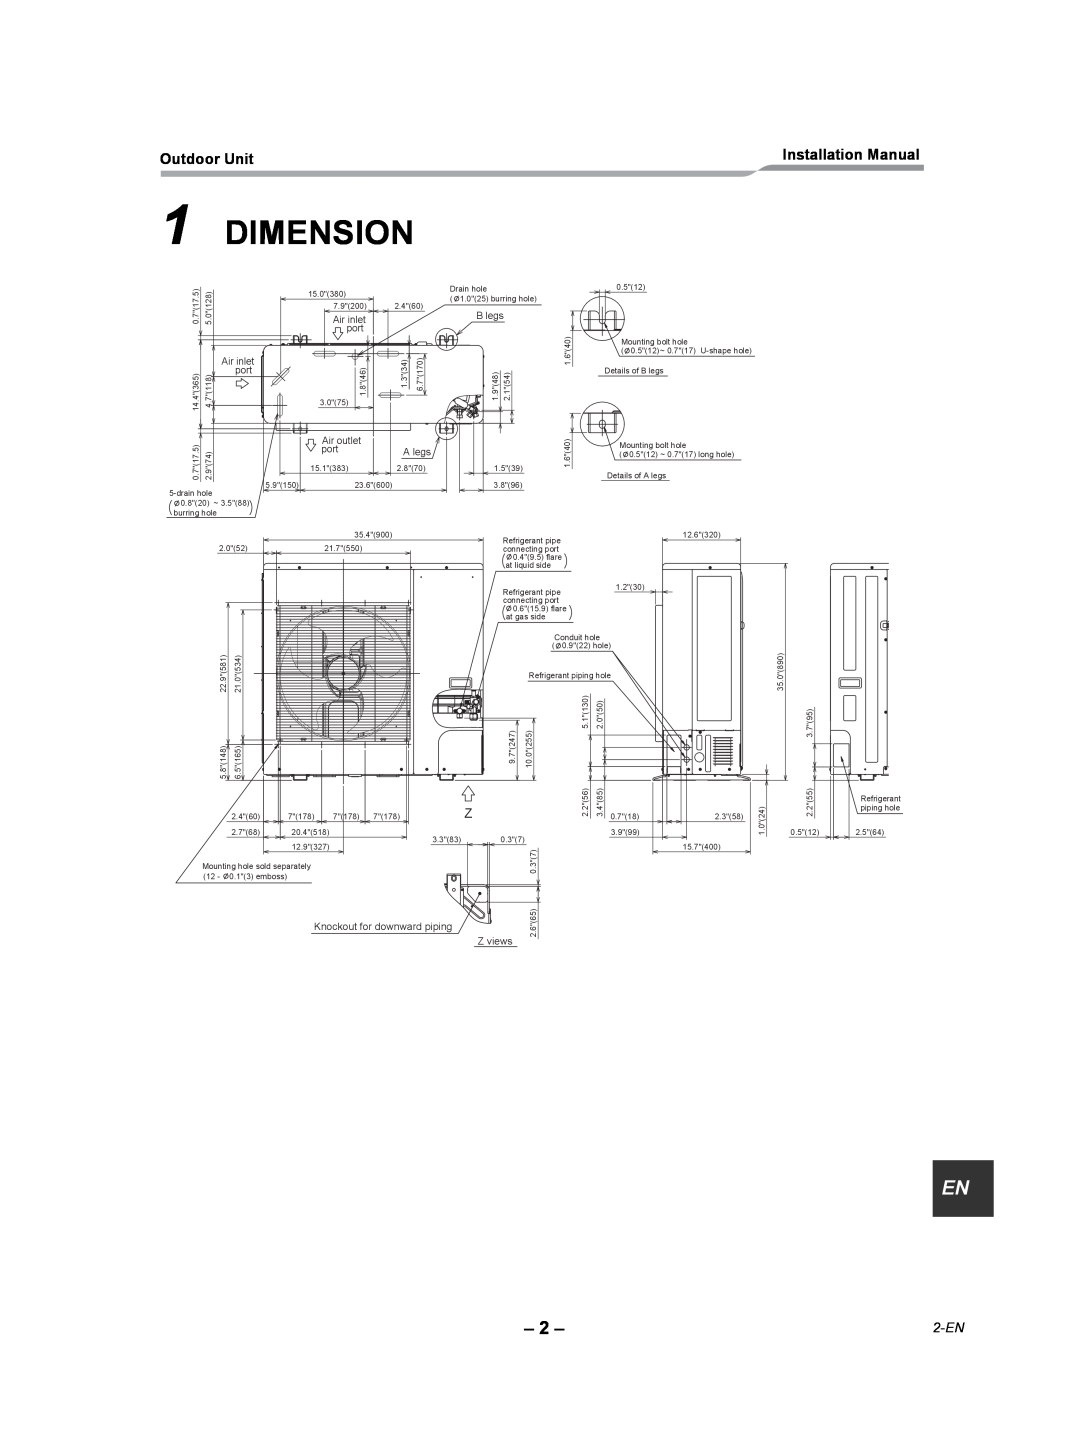 Toshiba RAV-SP240AT2-UL installation manual Dimension, 2-EN 